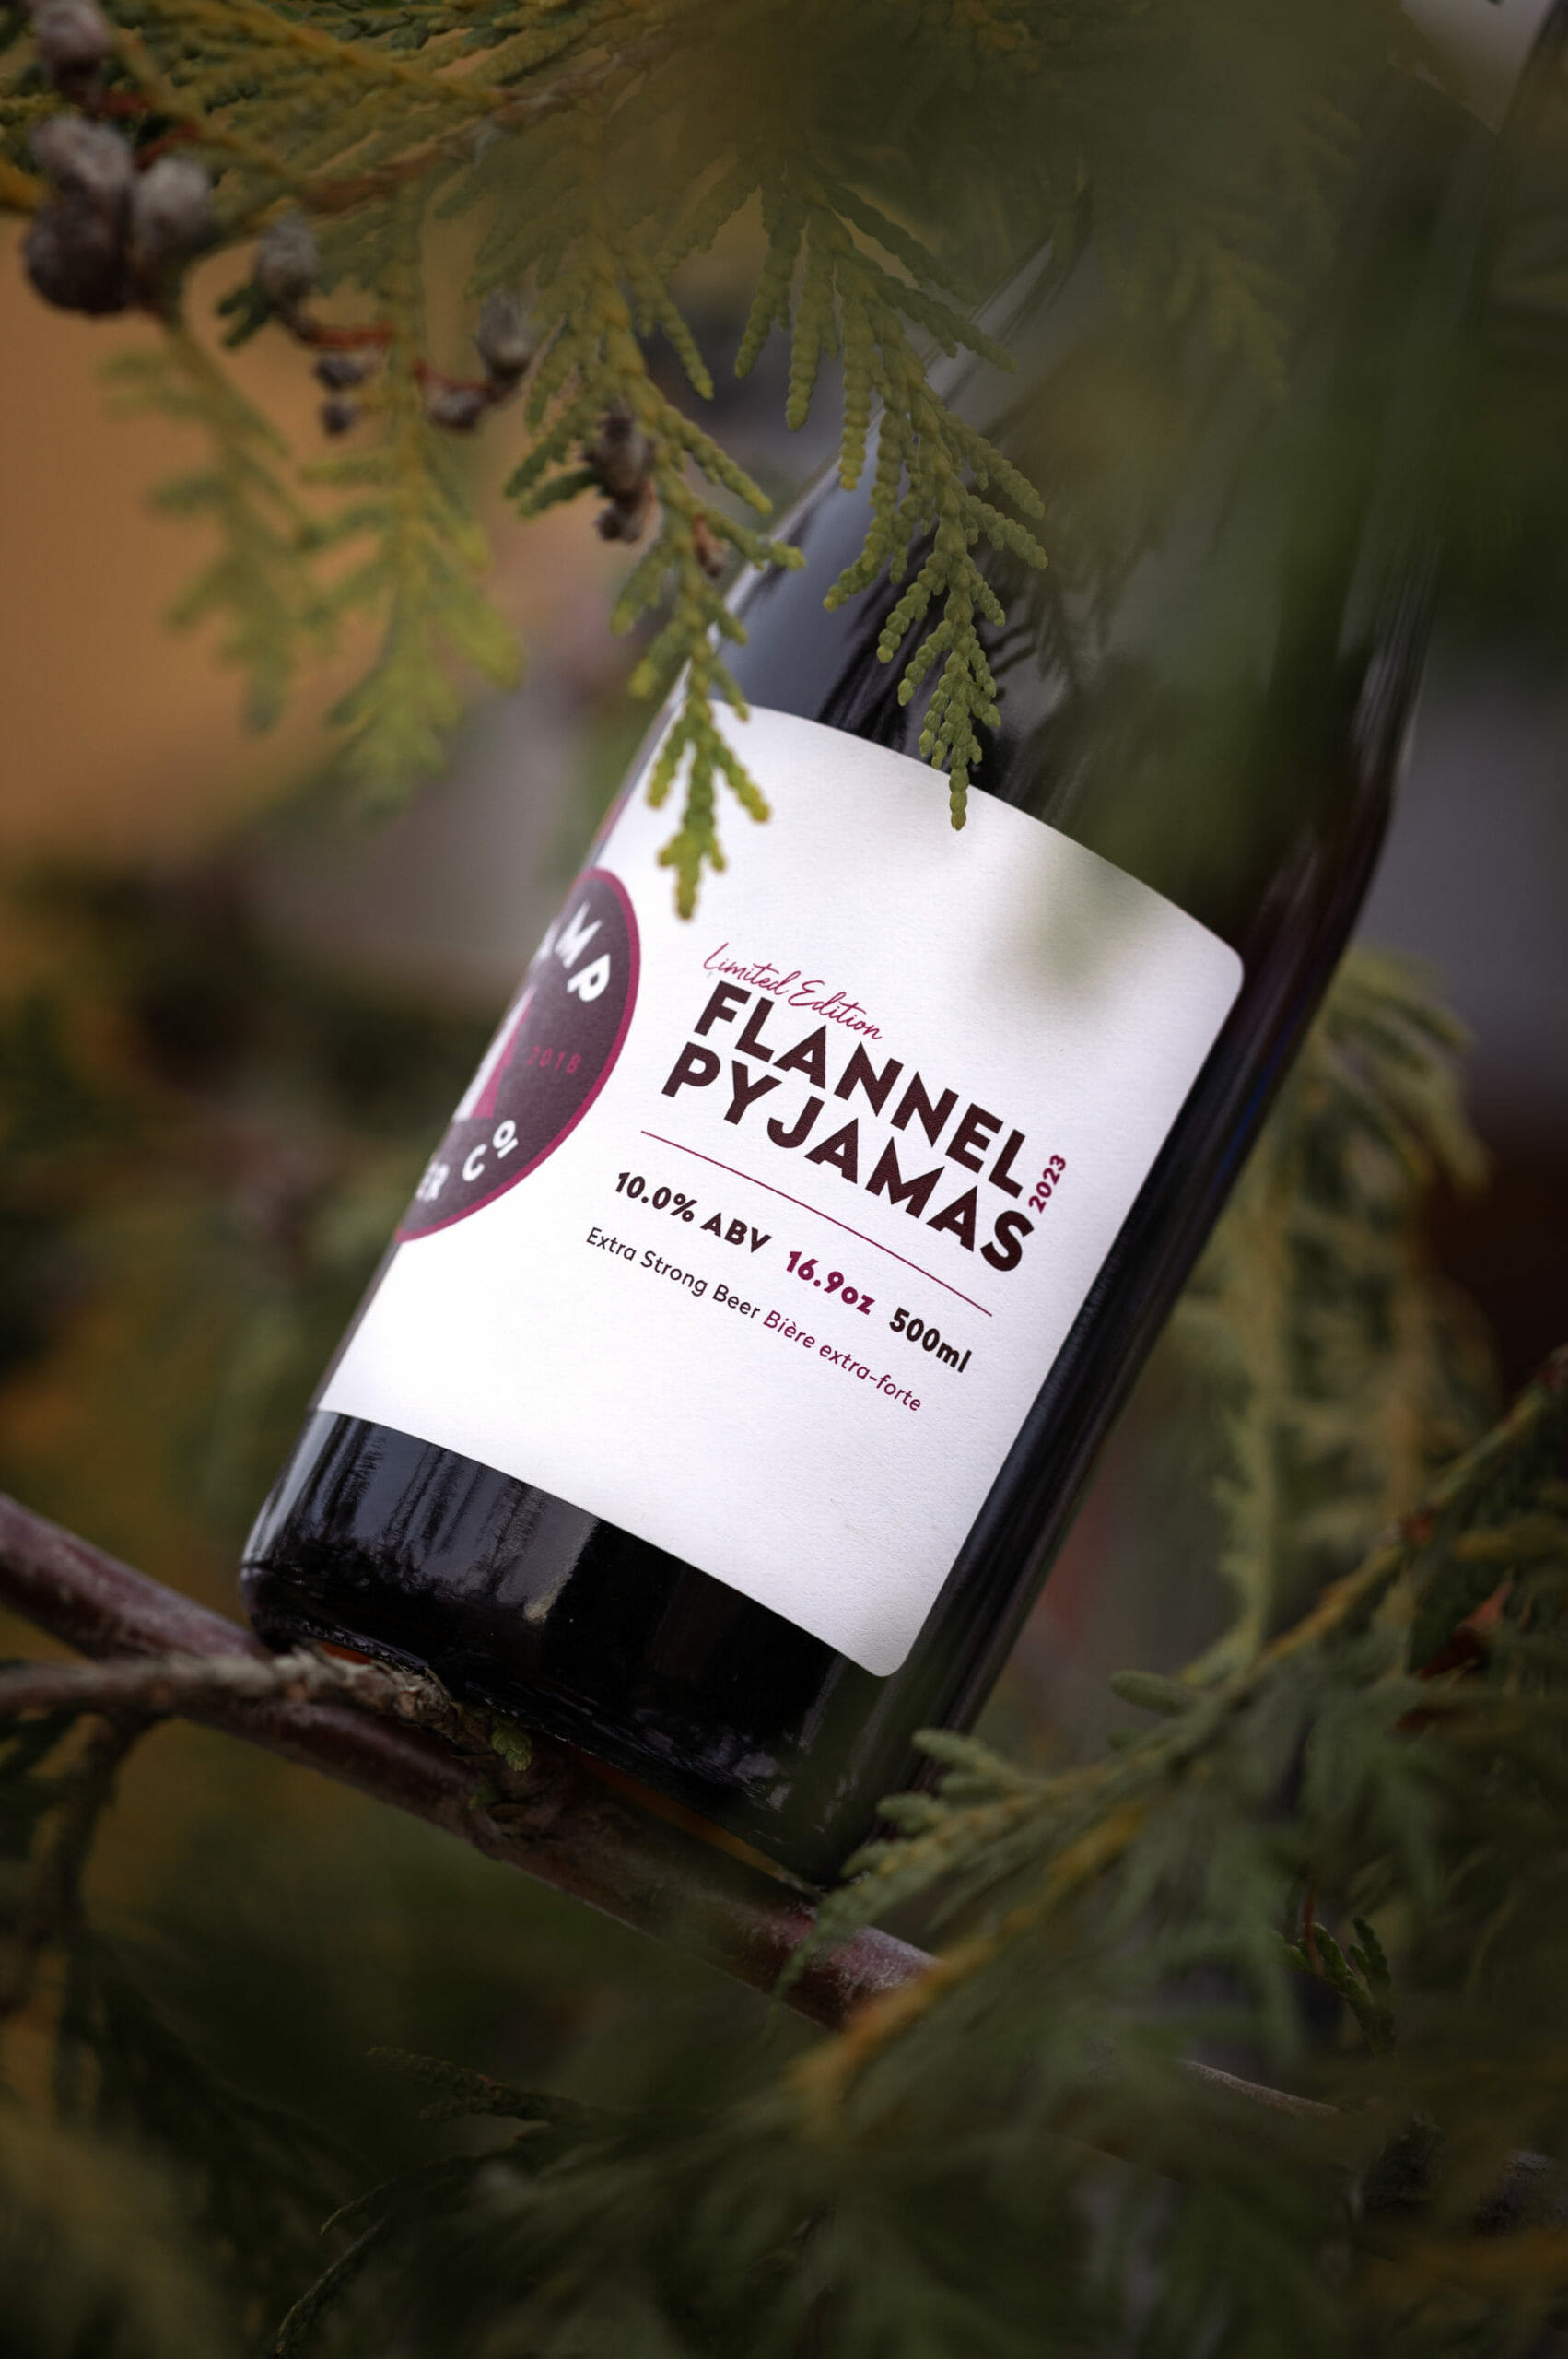 Flannel Pyjamas ‘23 - CAMP Beer Co.